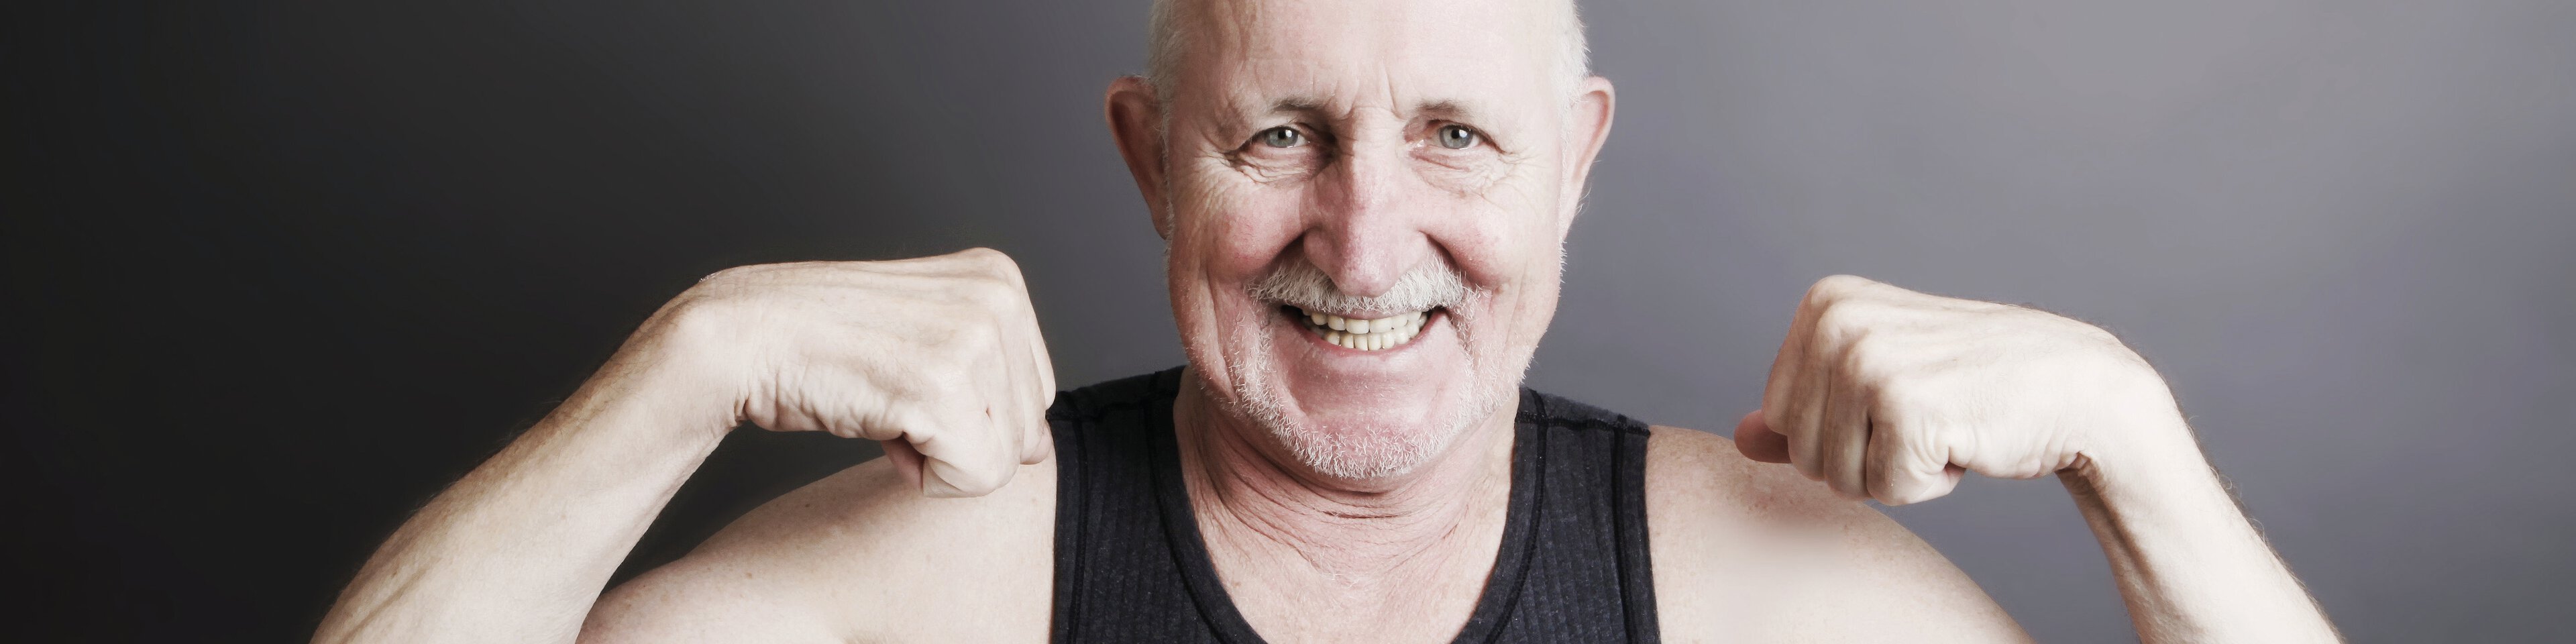 Älterer Mann der seine Muskeln anspannt | © bilderstoeckchen - Fotolia